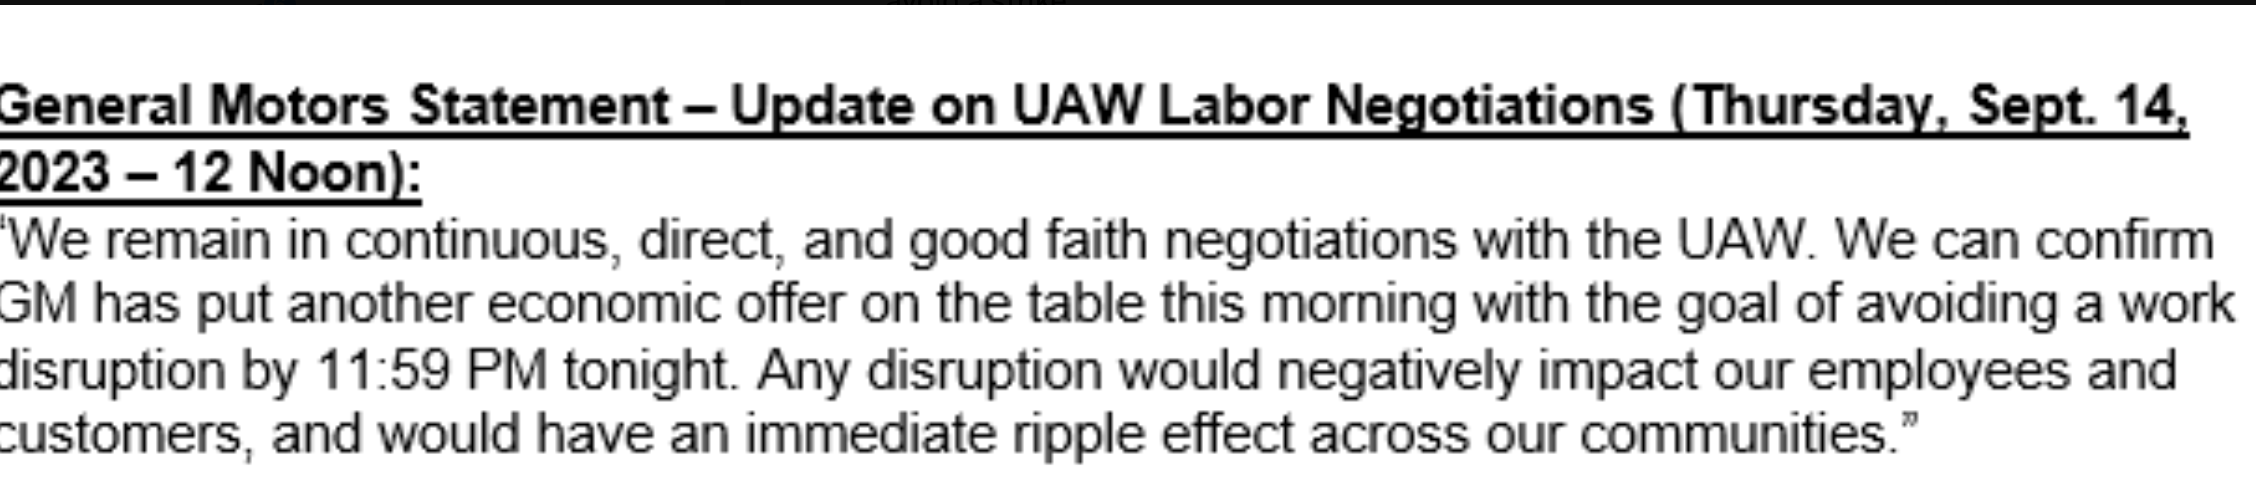 GM UAW Negotiations 2023